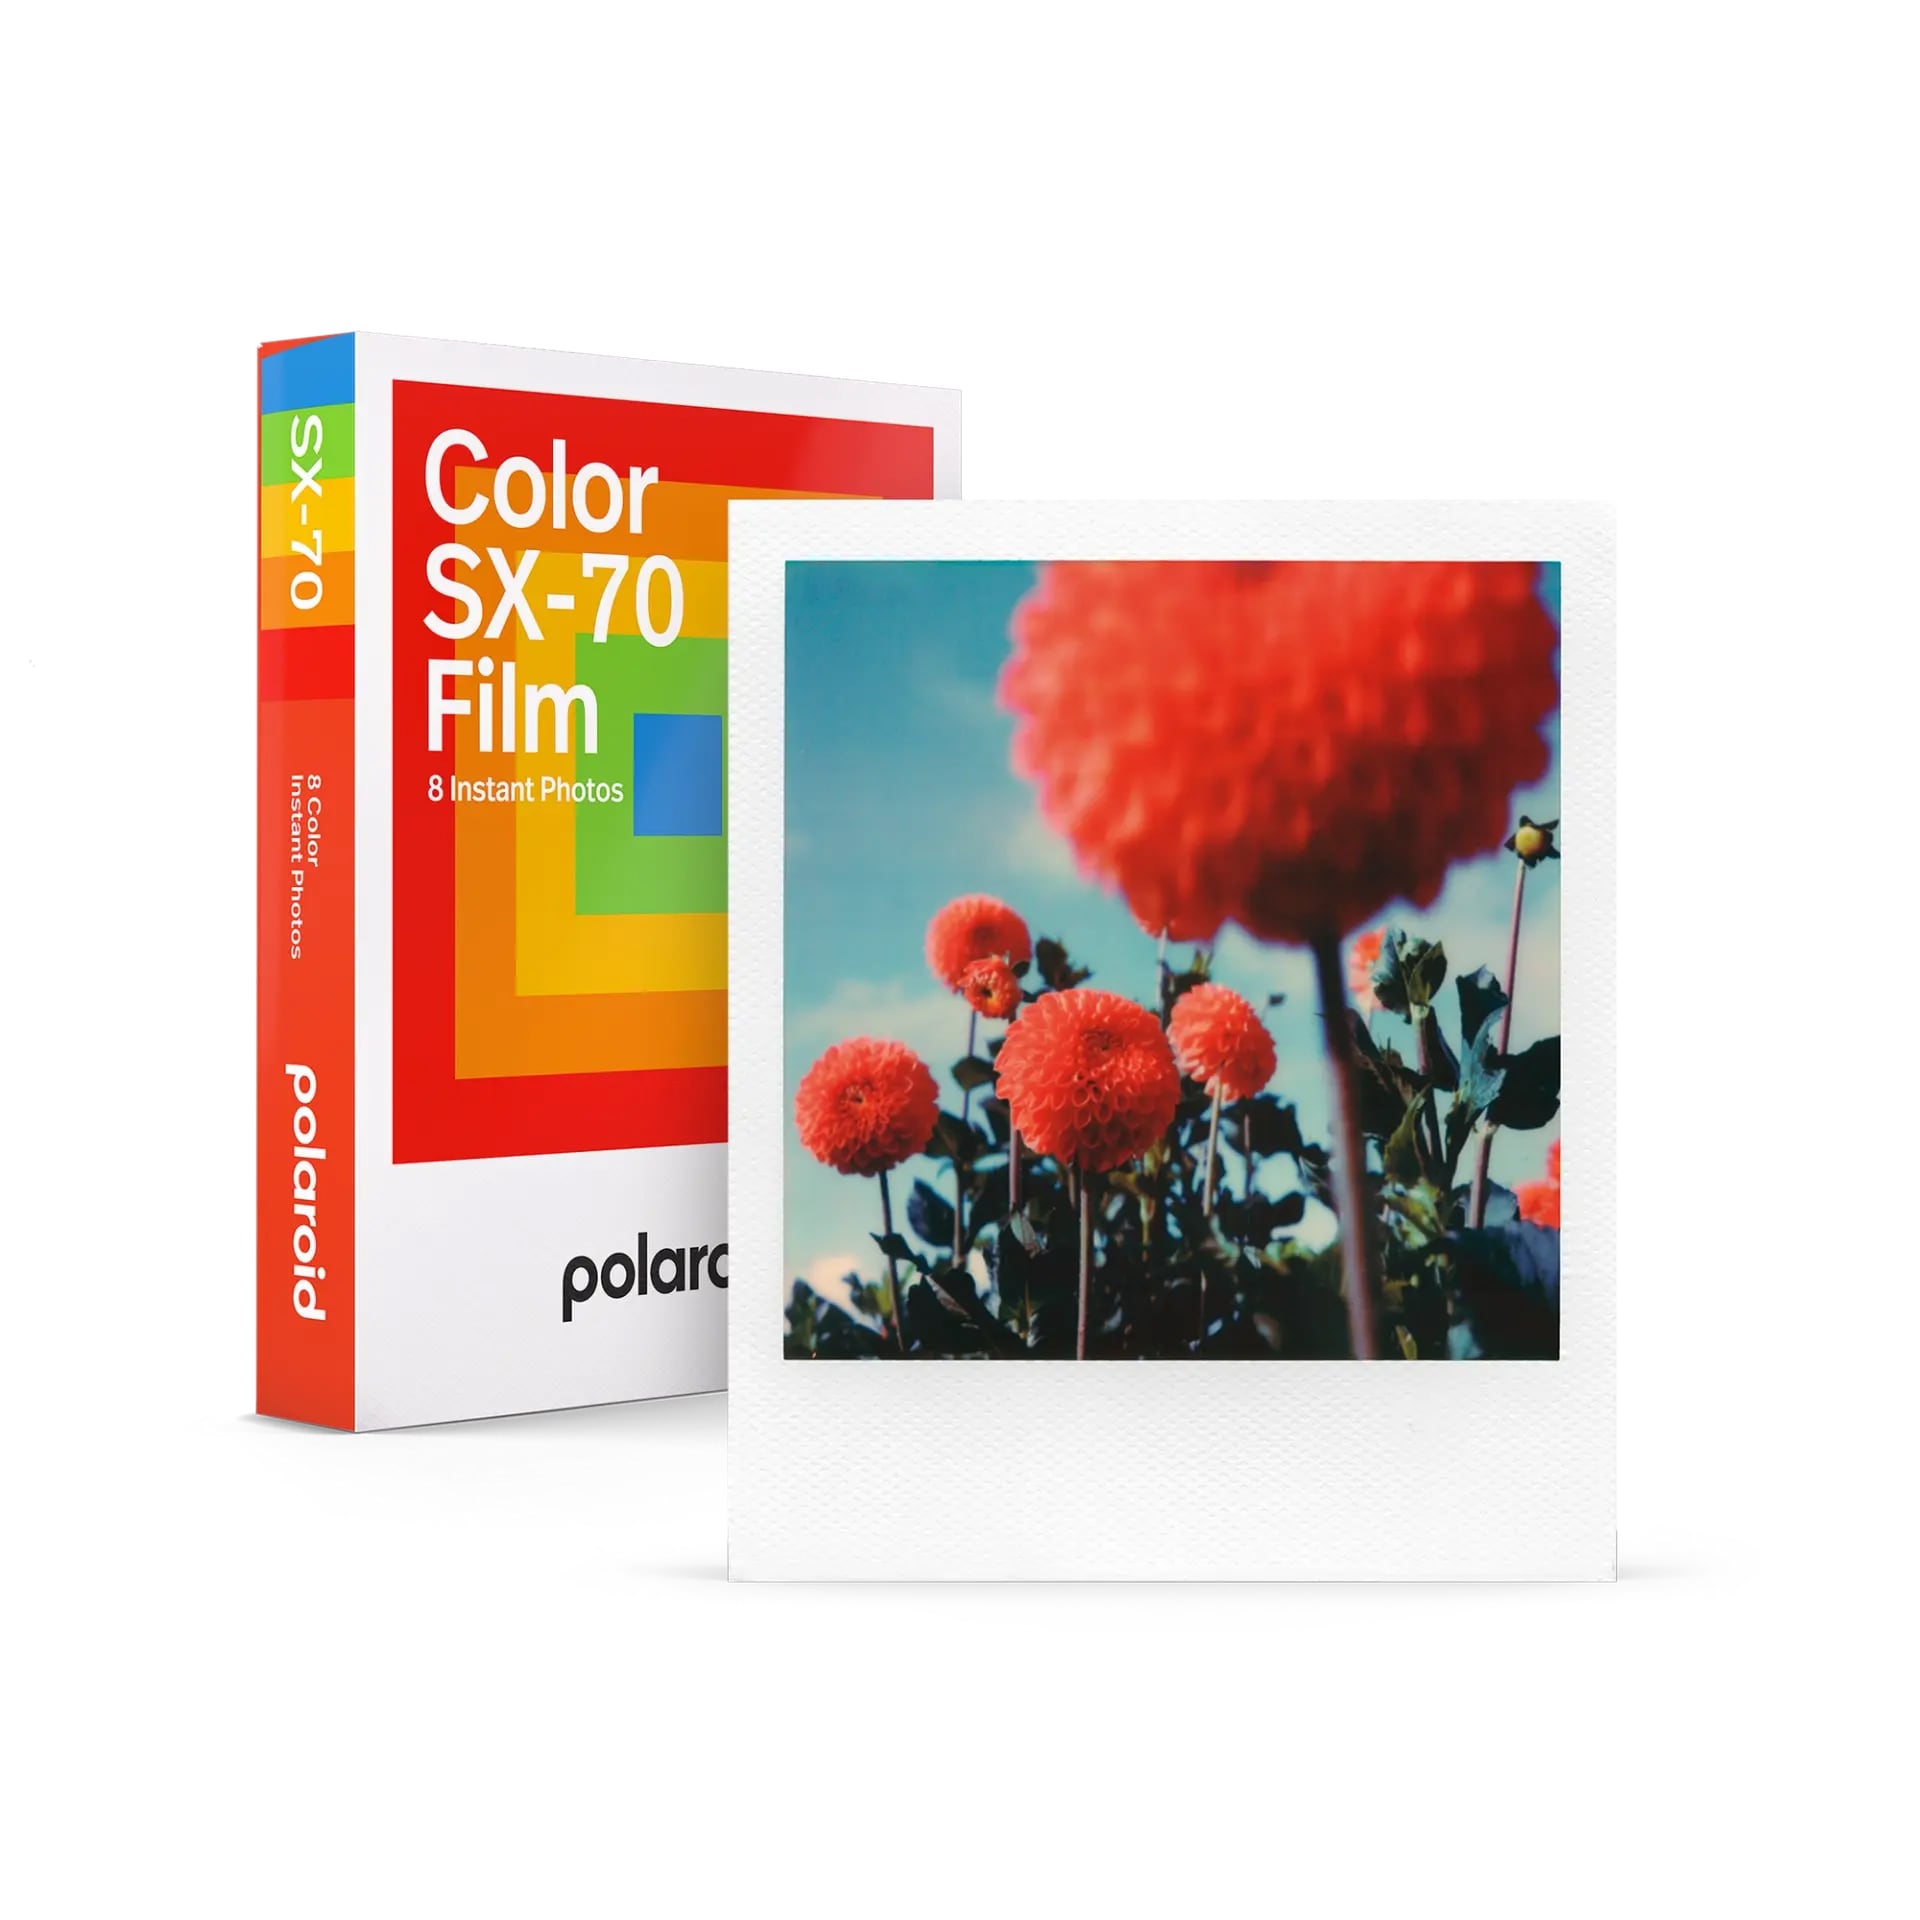 Polaroid Originals Färgfilm SX-70